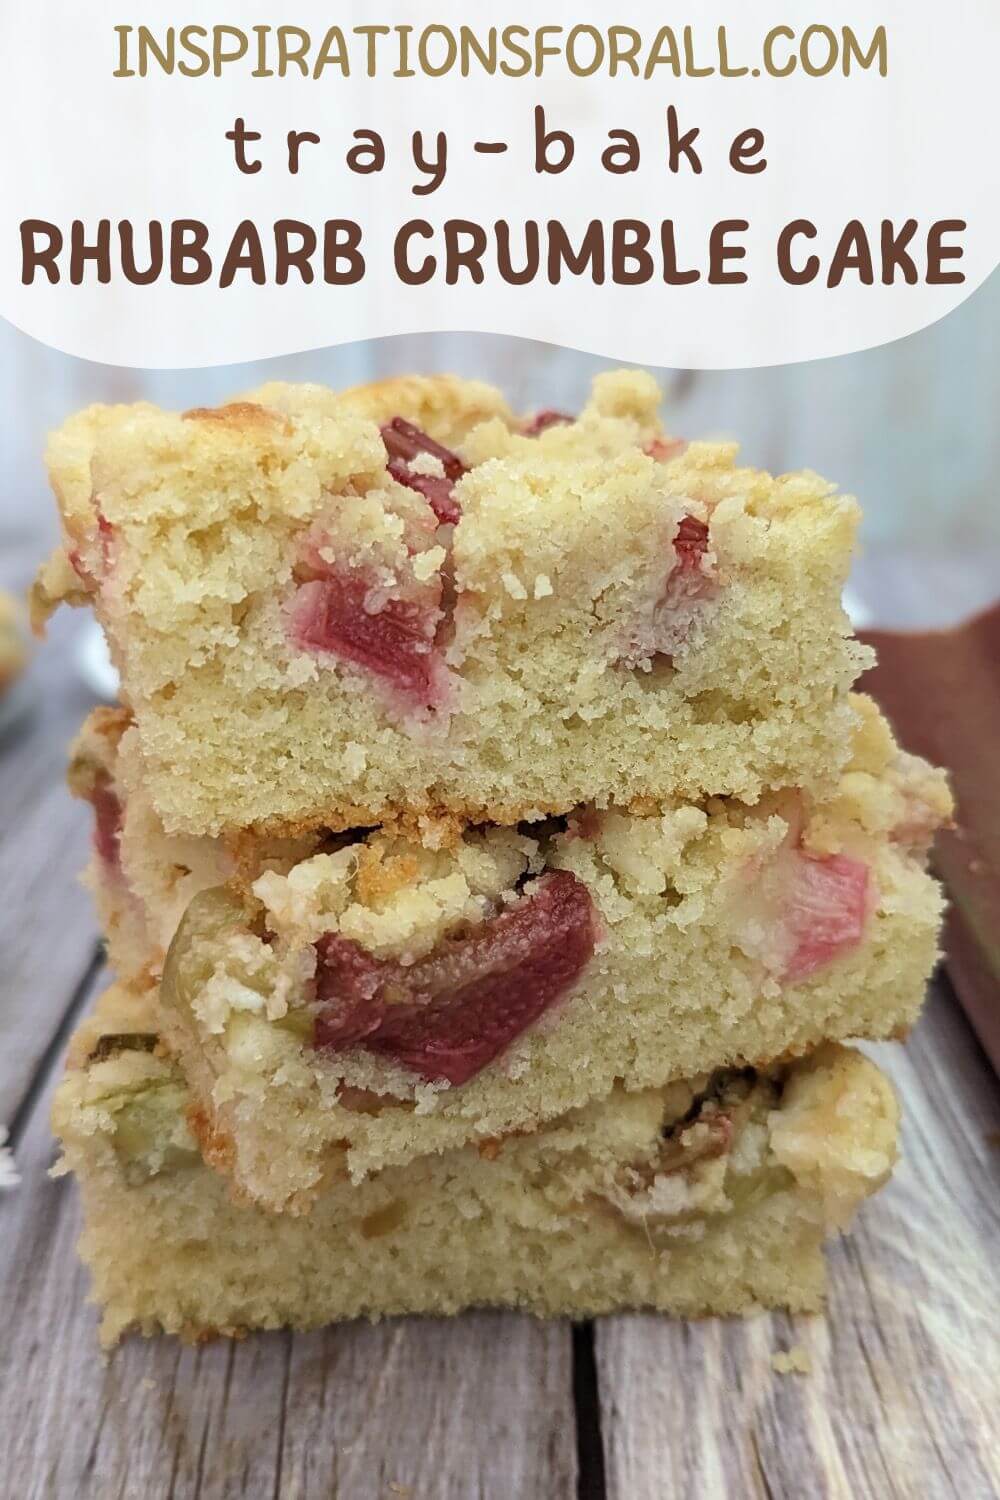 Pin Rhubarb crumble cake